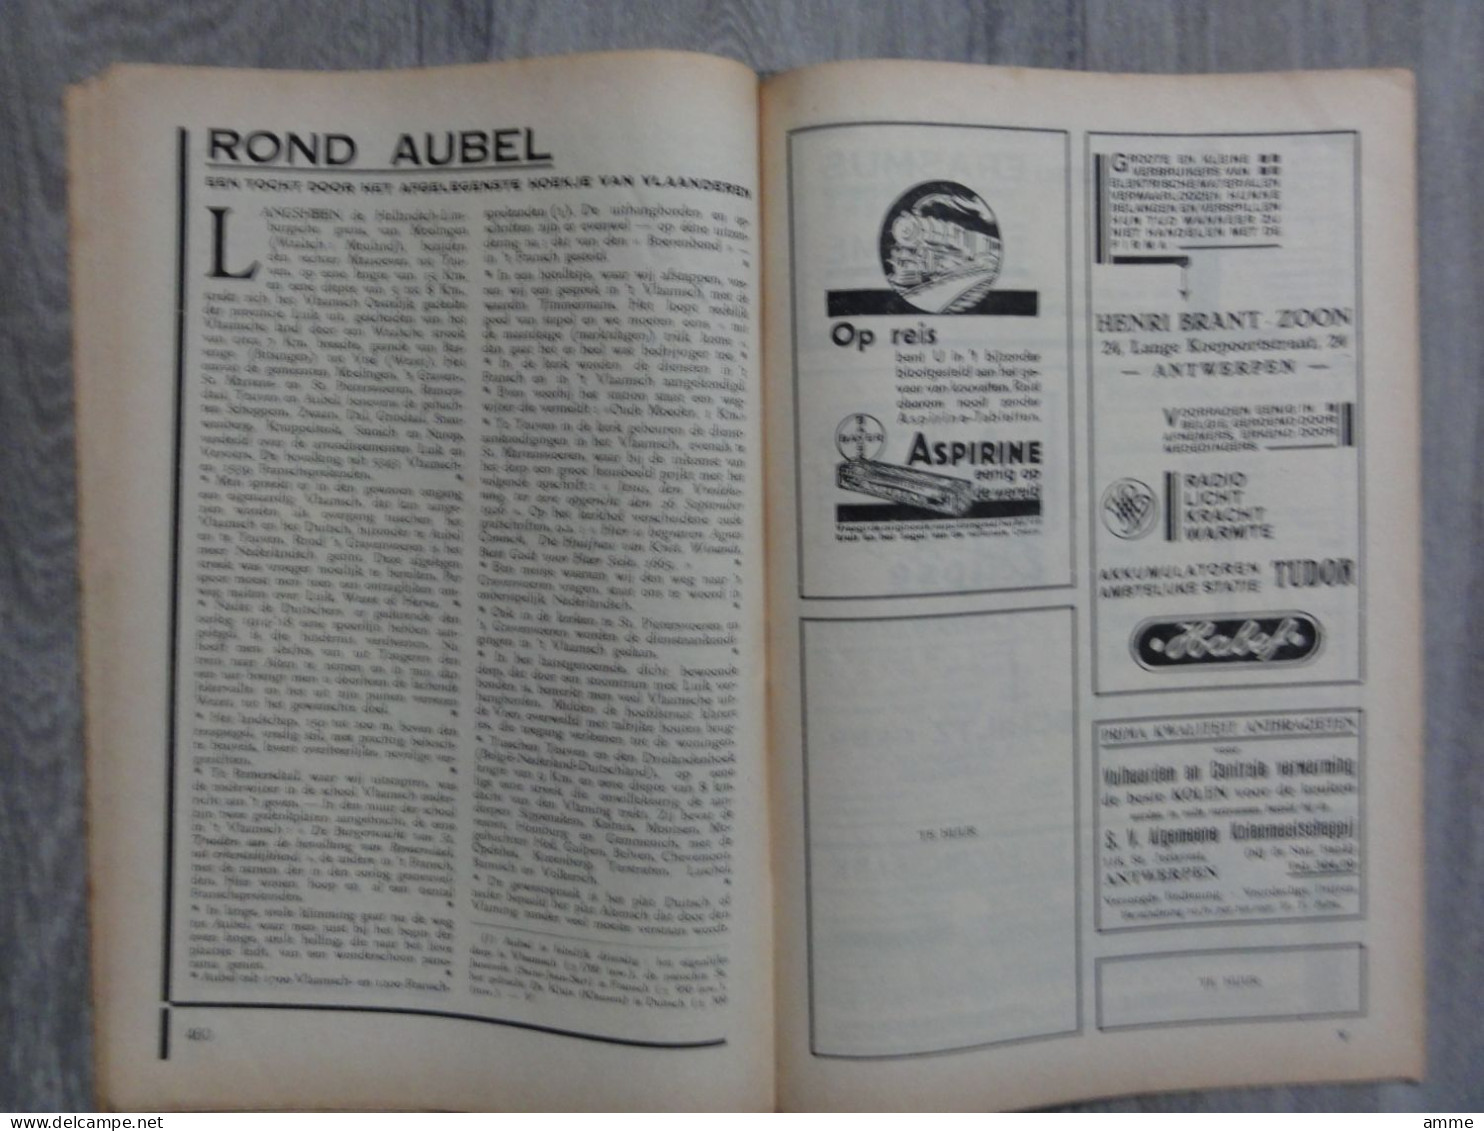 Toerisme  *  (tijdschrift n° 18 - sept. 1930)  Roeselare - Halle - Brugge - Utrecht - - publiciteit hotels